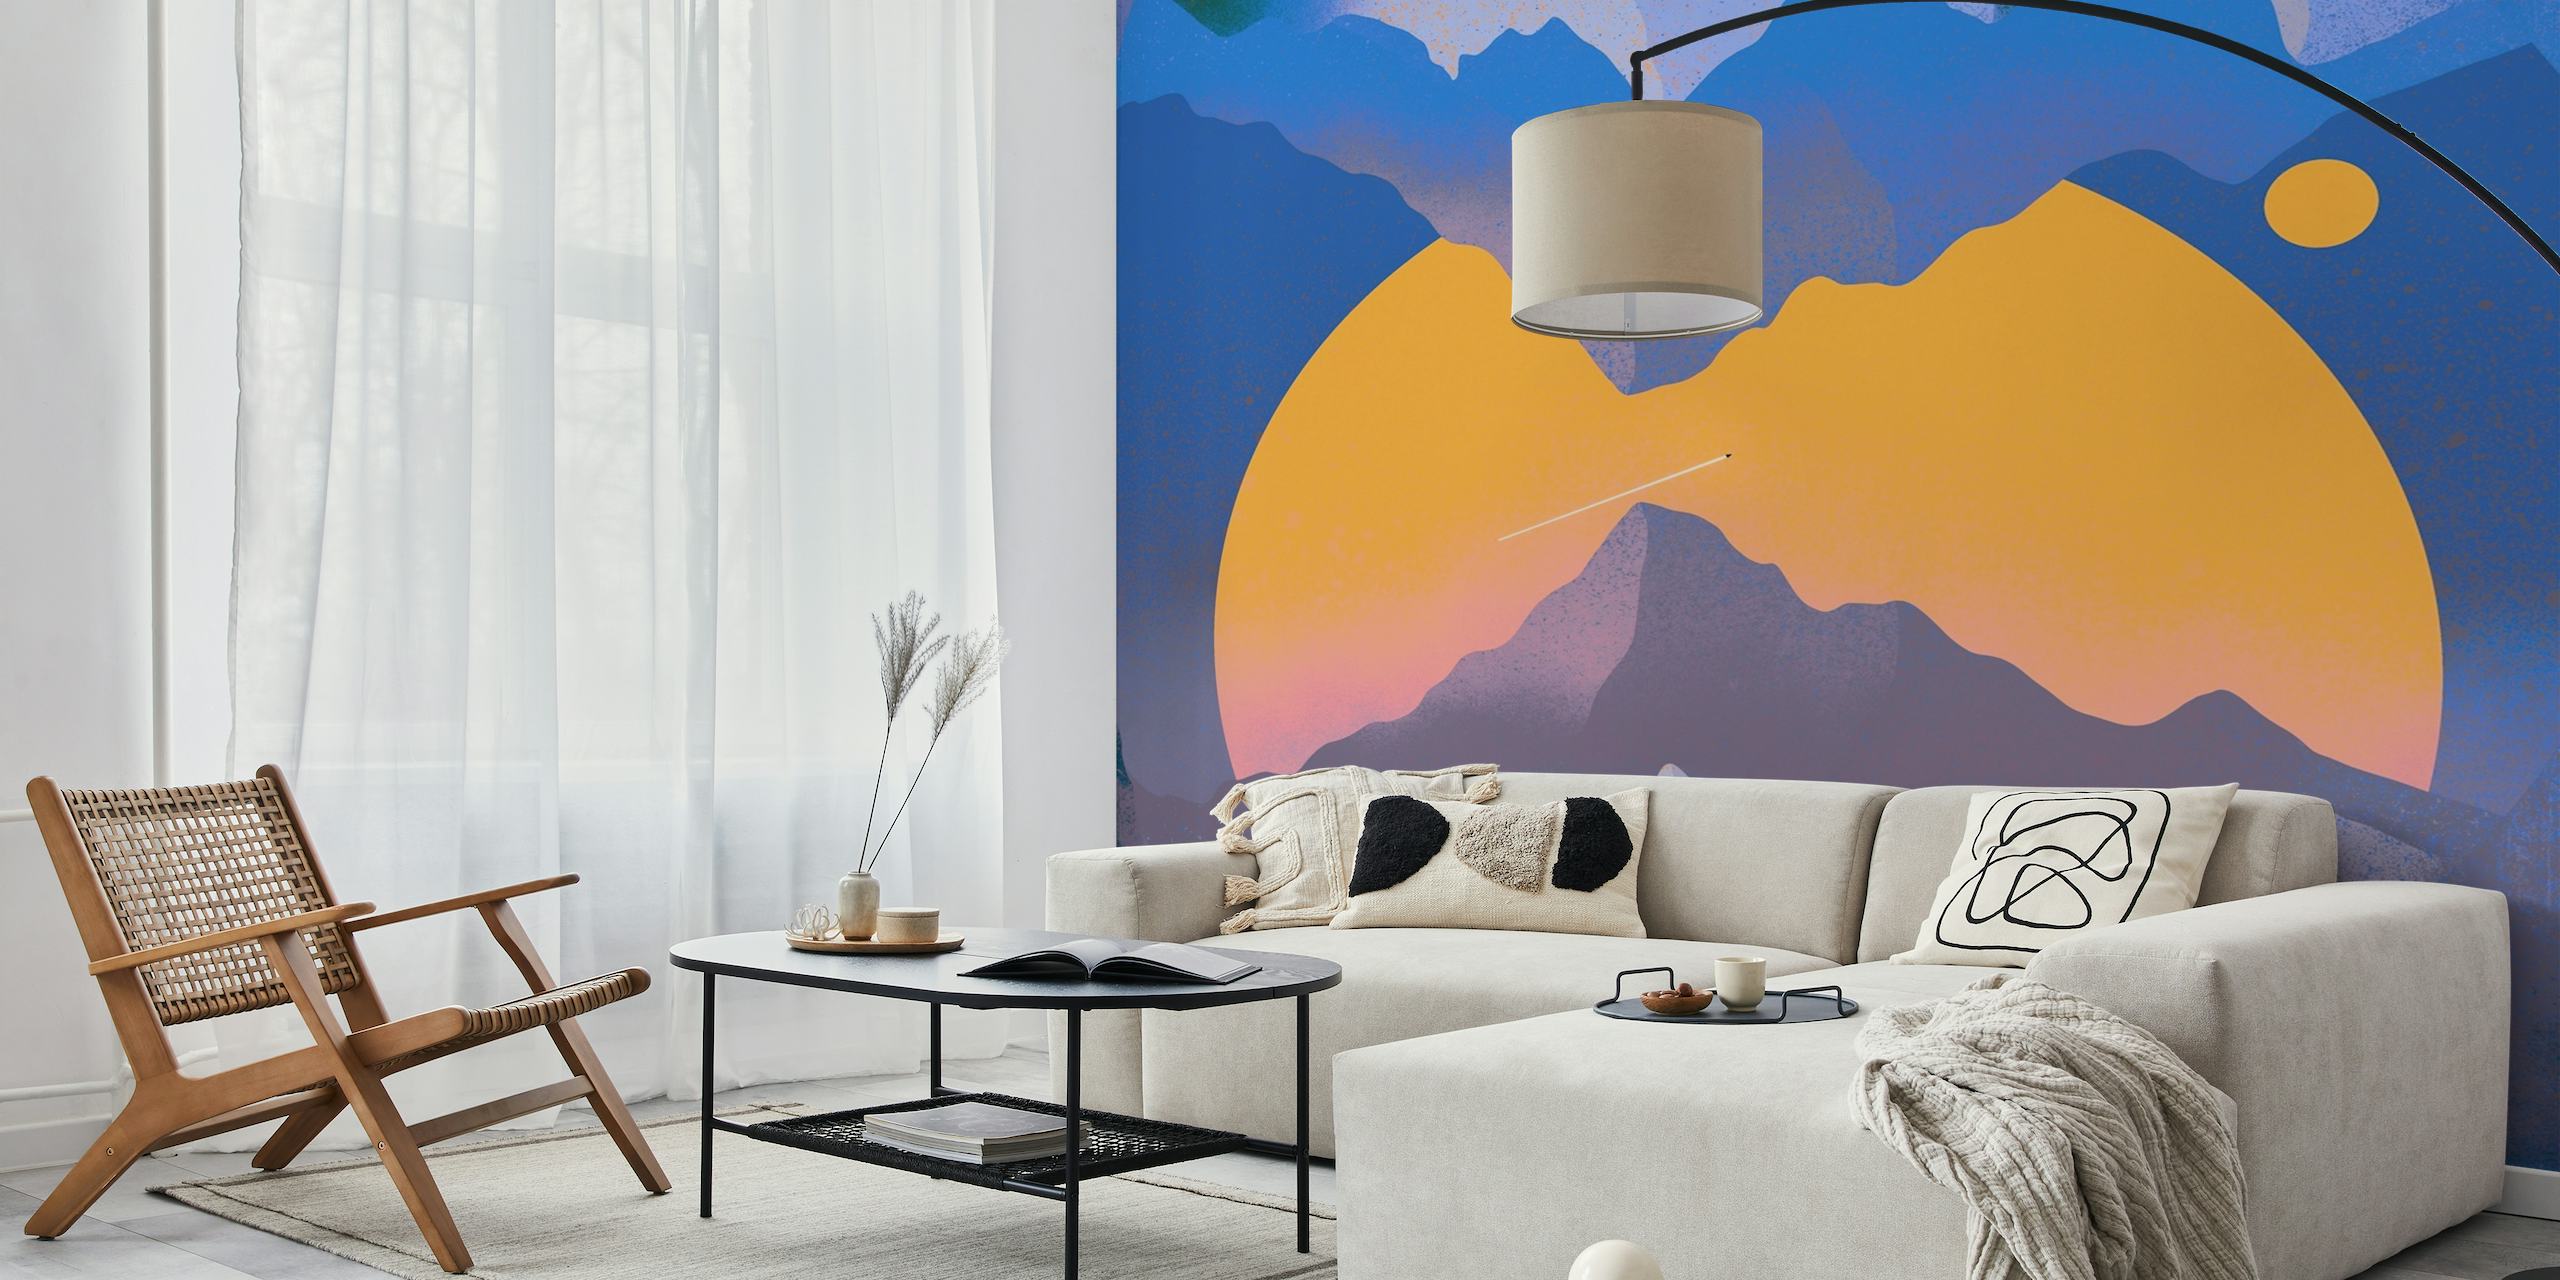 Peinture murale abstraite sur le thème de l'espace avec des montagnes et une planète orange stylisée